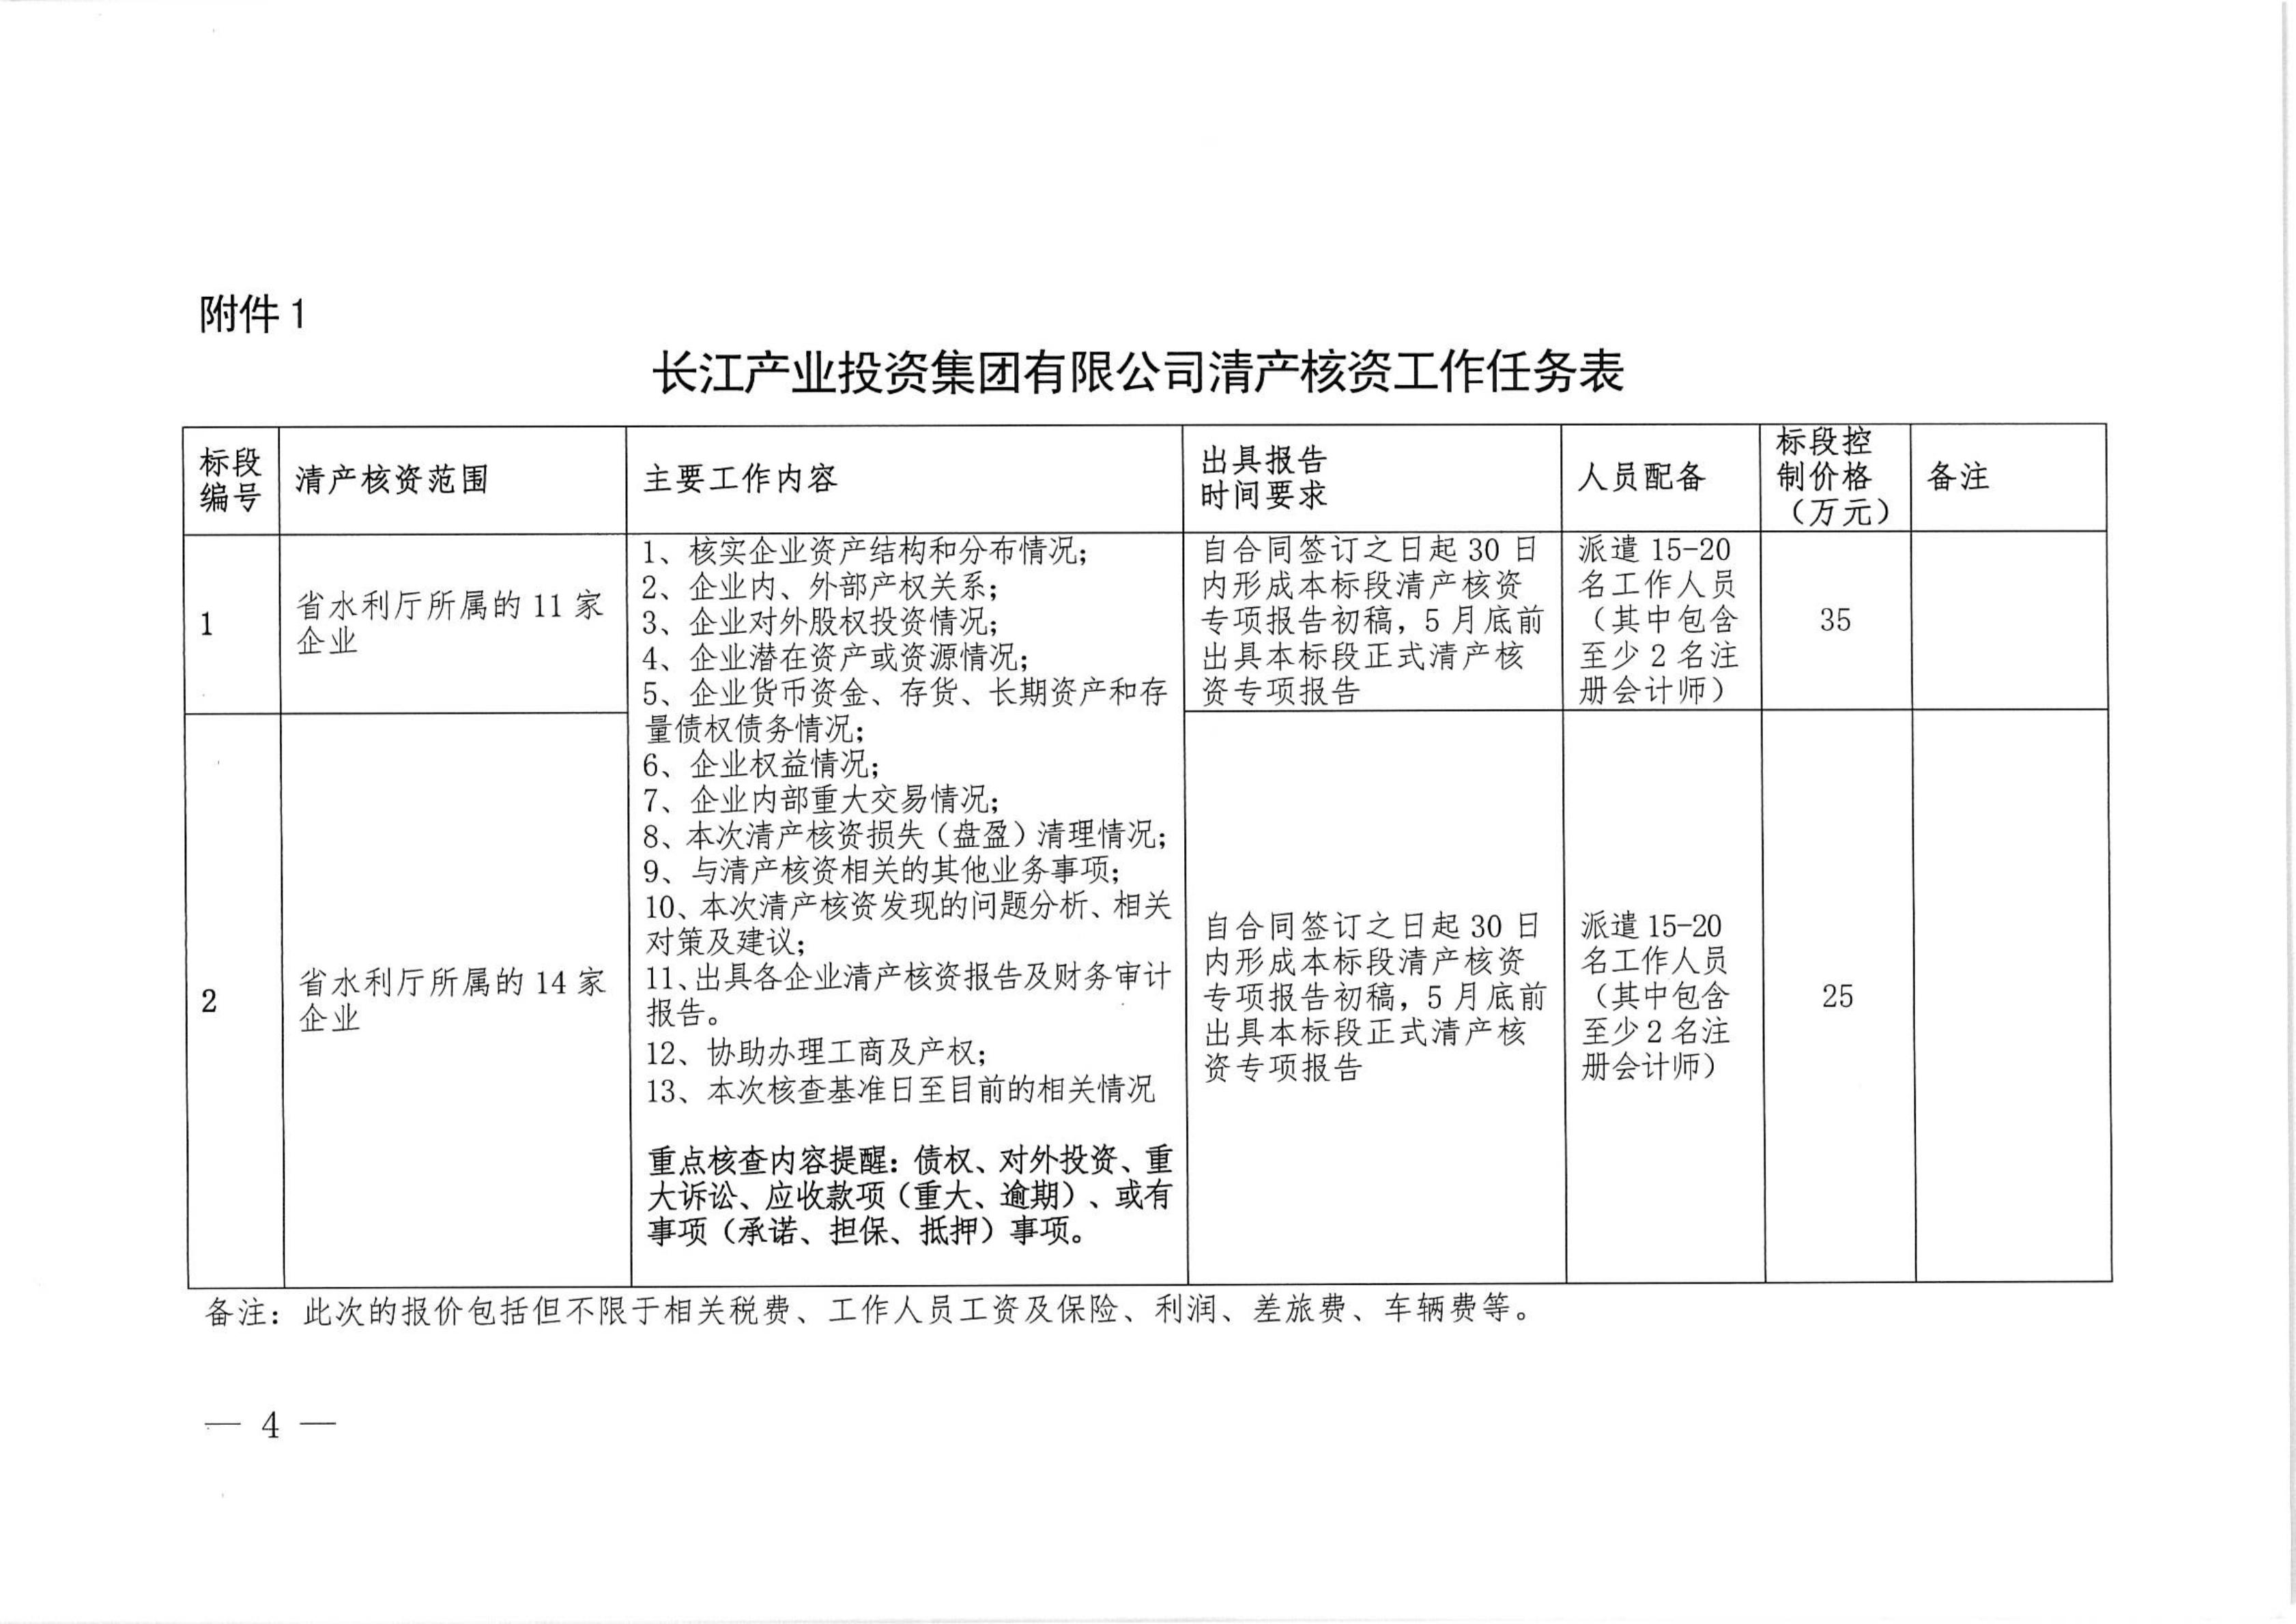 69、长江产业集团清产核资邀标文件(1)  盖章版_03.jpg